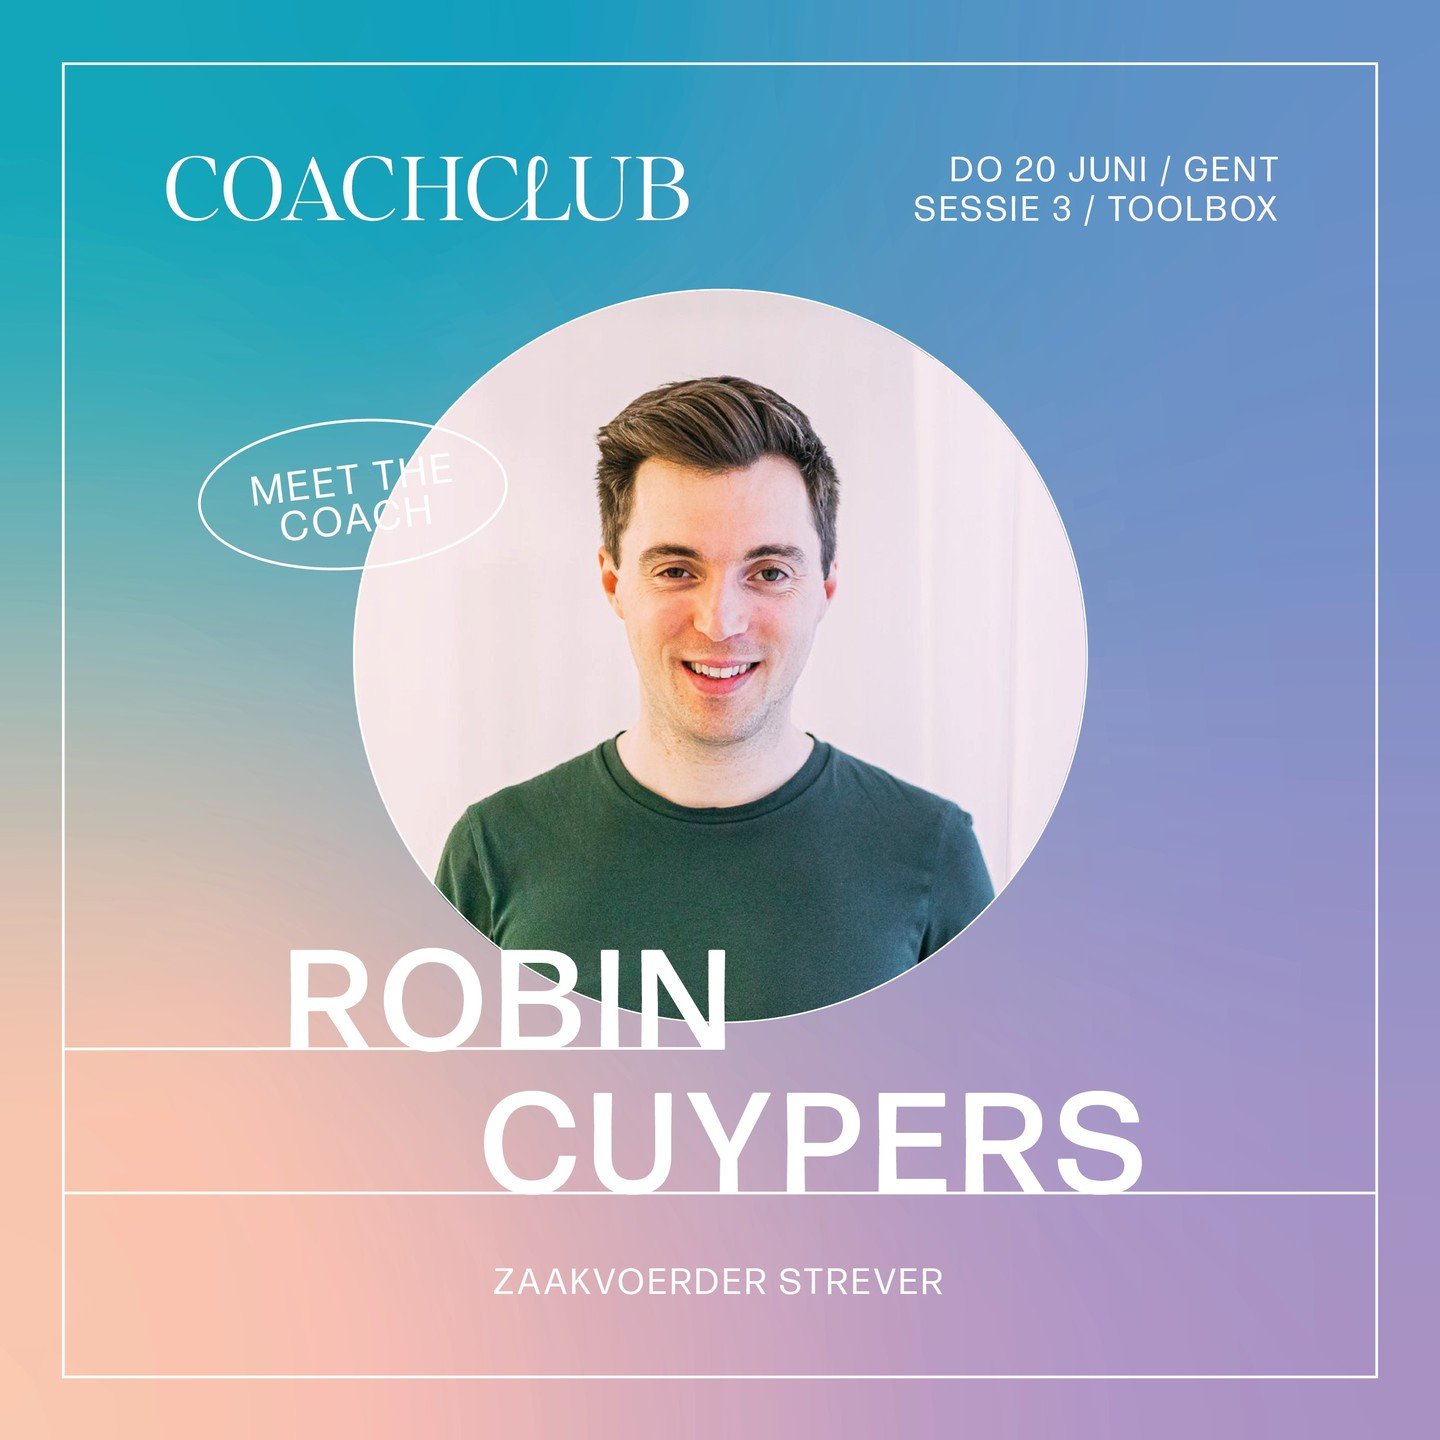 MEET THE COACH &bull; ROBIN CUYPERS

Zaakvoerder van Strever

Expertise in prijszetting, prijscommunicatie en kostprijsberekening.

LET&rsquo;S MEET, GET COACHED BY ROBIN!
Inschrijven kan via onze website.

-

@itsrobincuypers @strever.be 
#coachingt